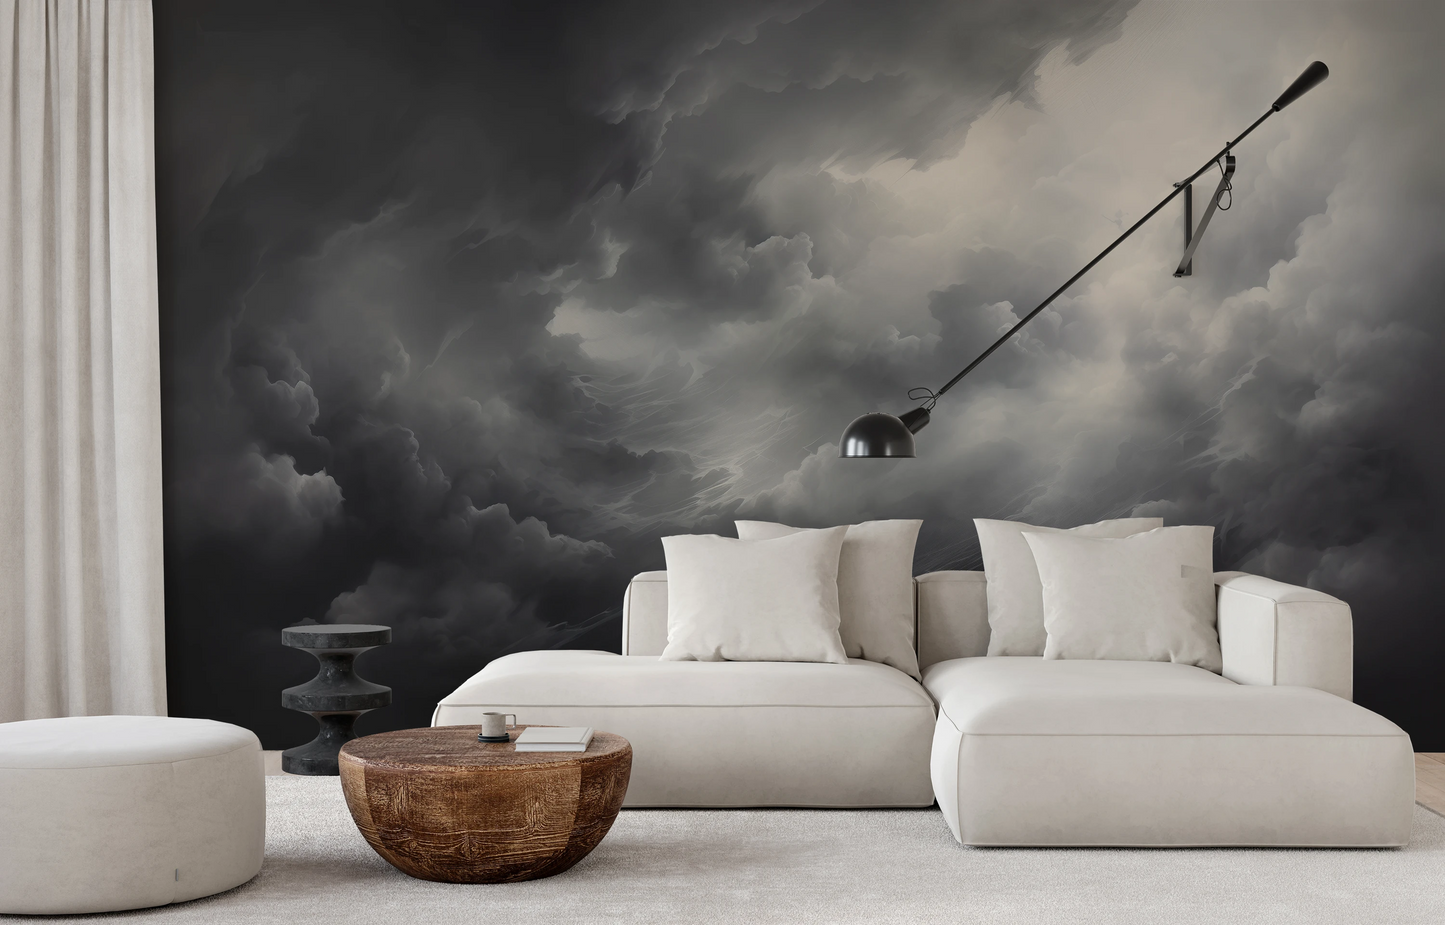 Fototapeta artystyczna o nazwie Storm's Crescendo pokazana w aranżacji wnętrza.